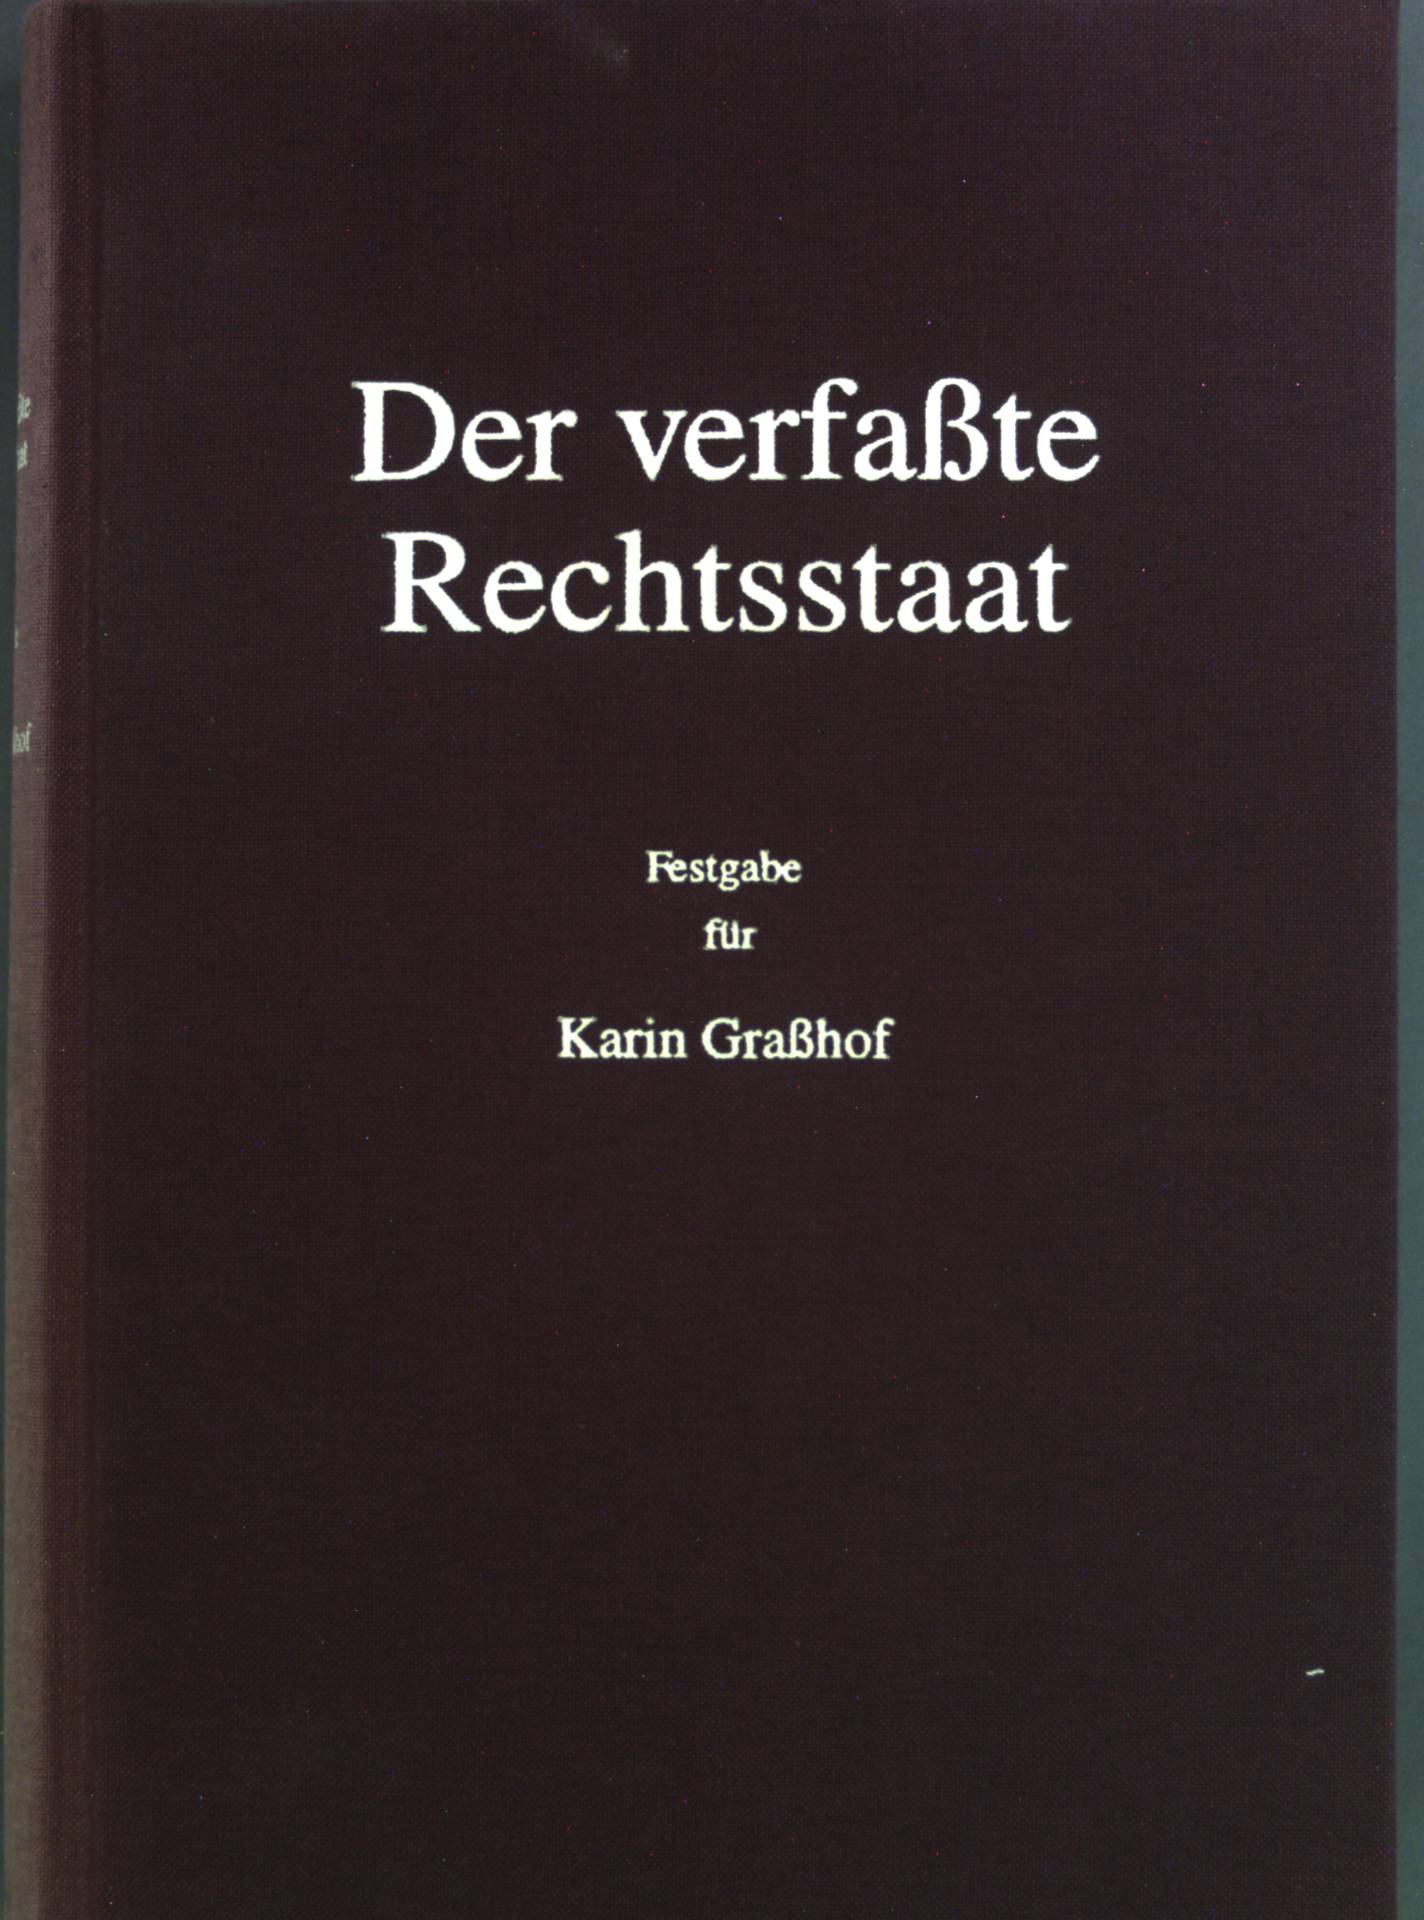 Der verfaßte Rechtsstaat : Festgabe für Karin Graßhof. - Pfeiffer, Gerd